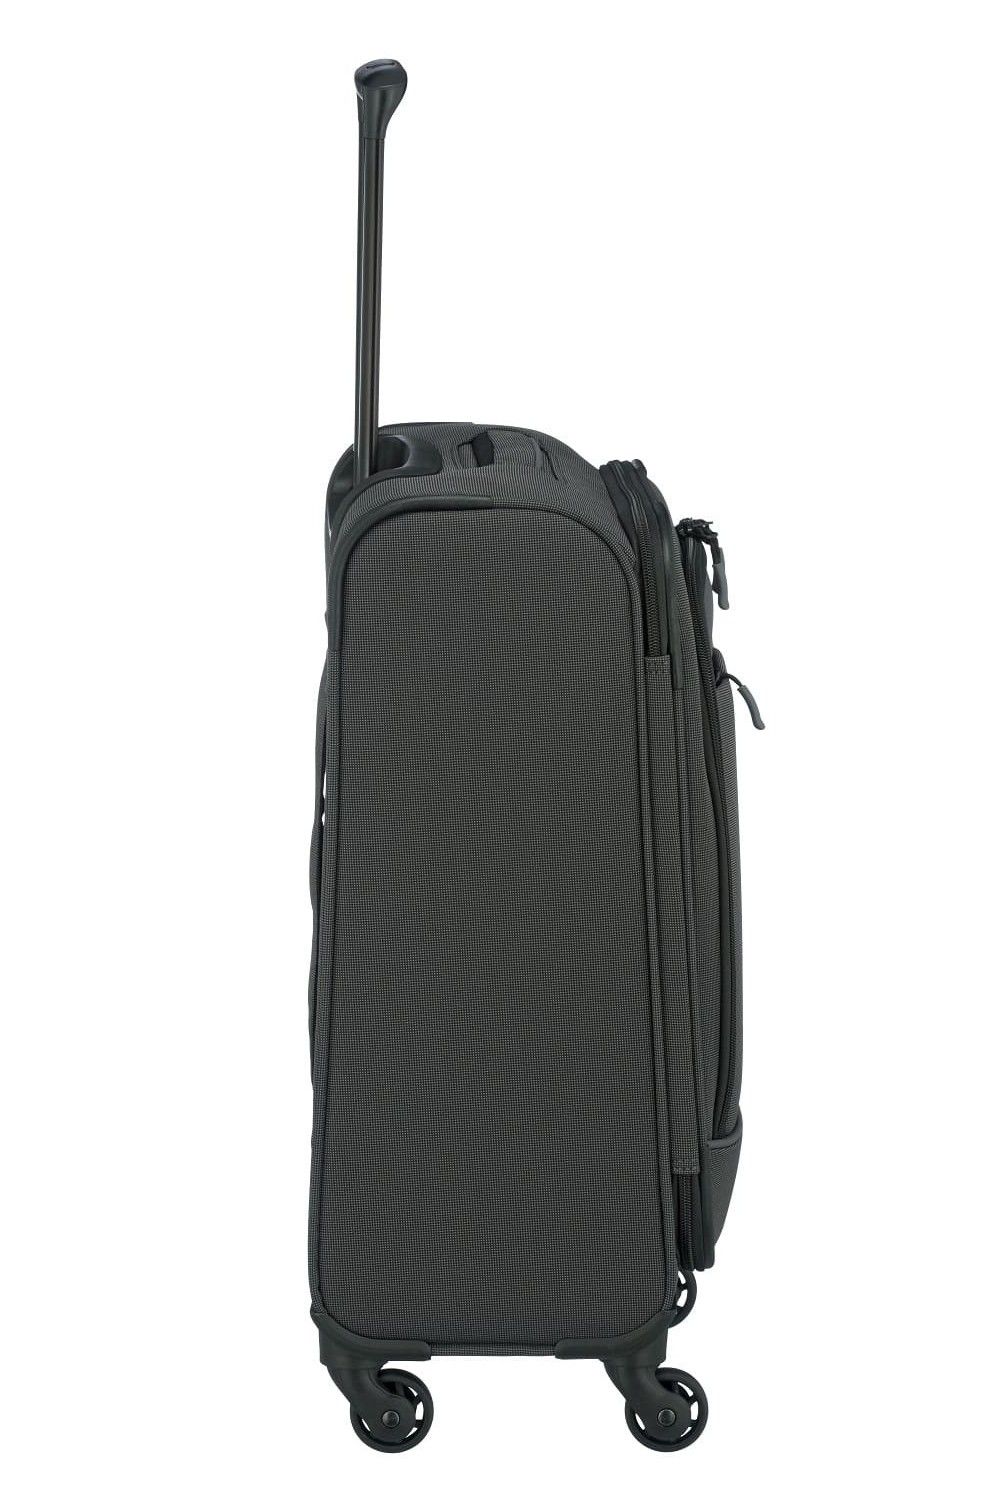 Travelite Derby S 55 cm 4 wheel hand luggage